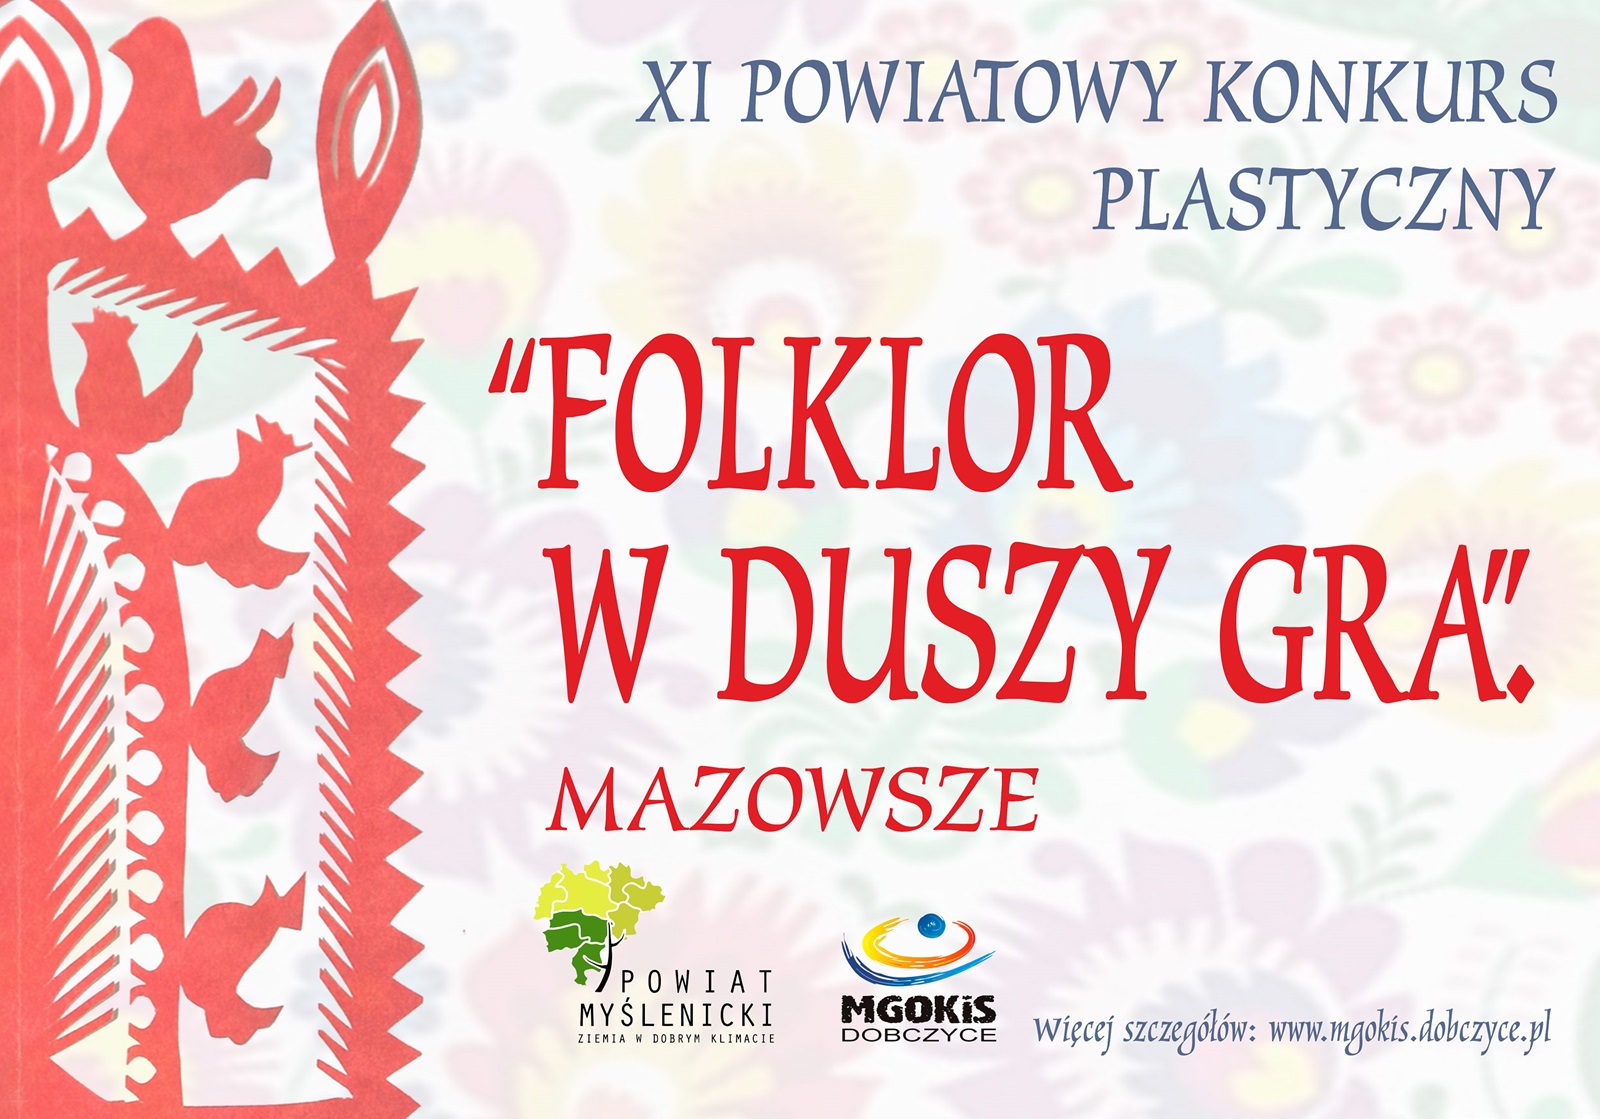 Zaproszenie do udziału w XI Powiatowym Konkursie Plastycznym "Folklor w duszy gra" - Mazowsze